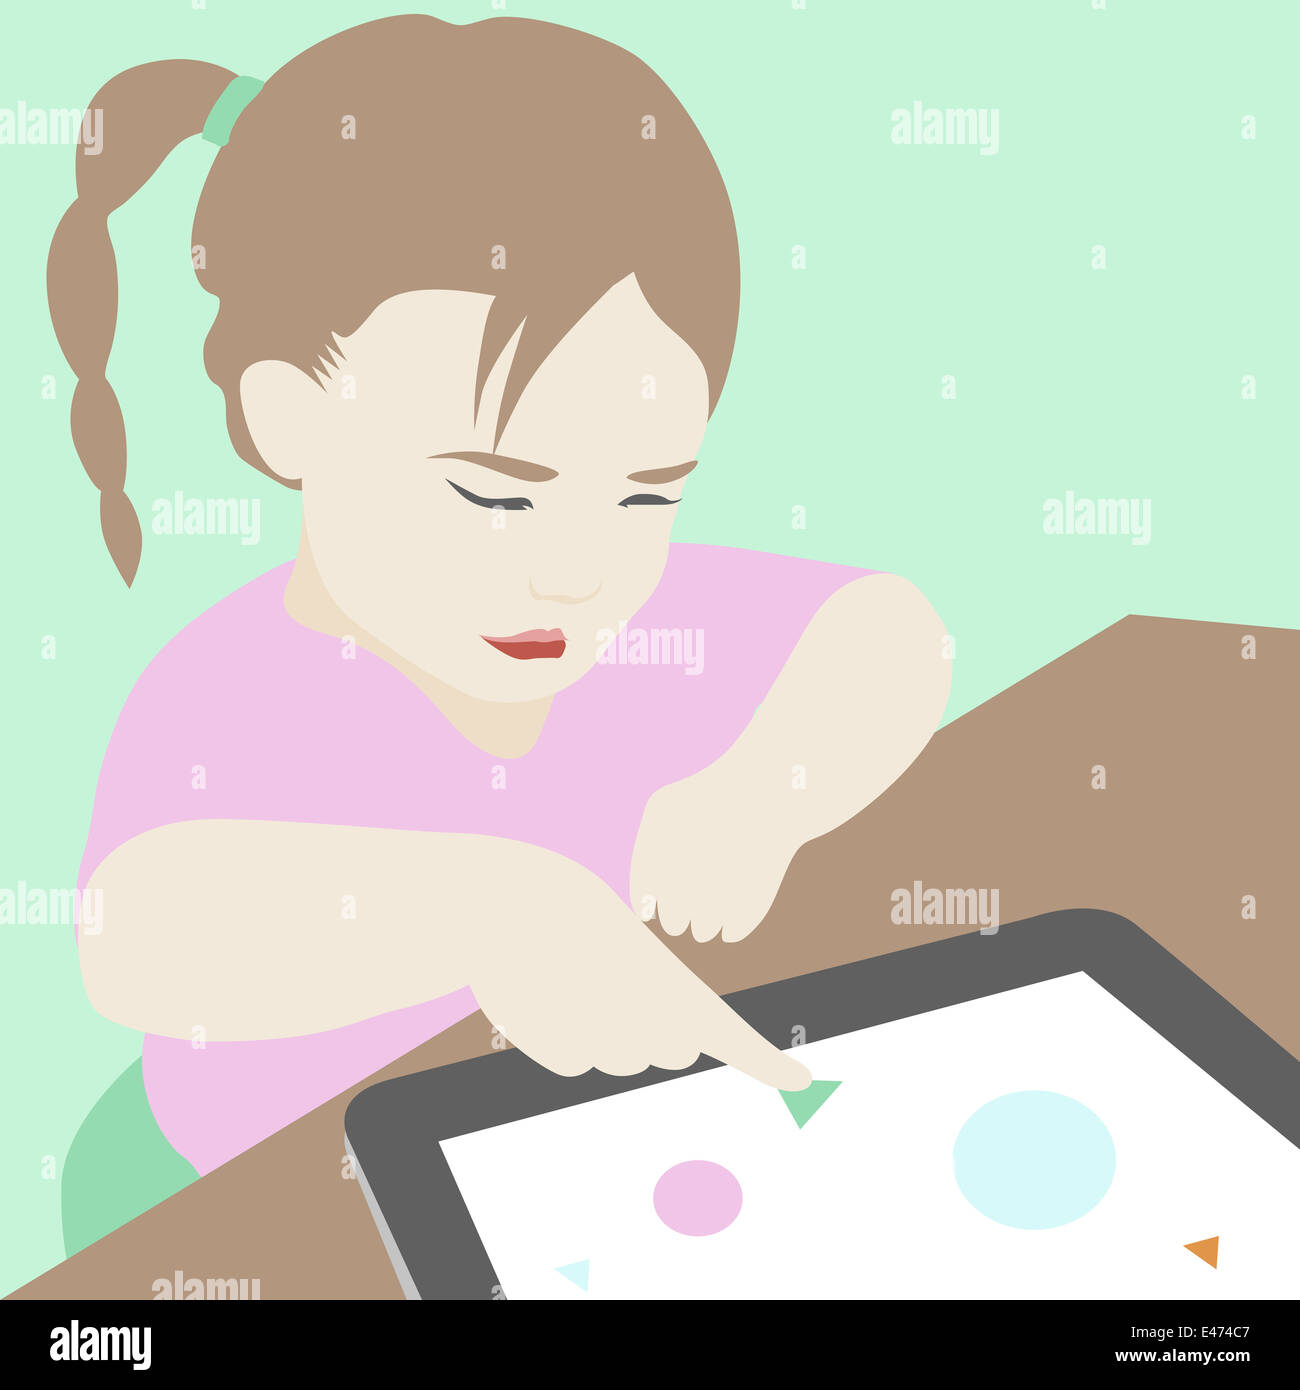 Télévision illustration de mignonne petite fille sérieuse essayant d'apprendre et d'utiliser certaines matières d'enseignement élémentaire sur tablette numérique. Banque D'Images